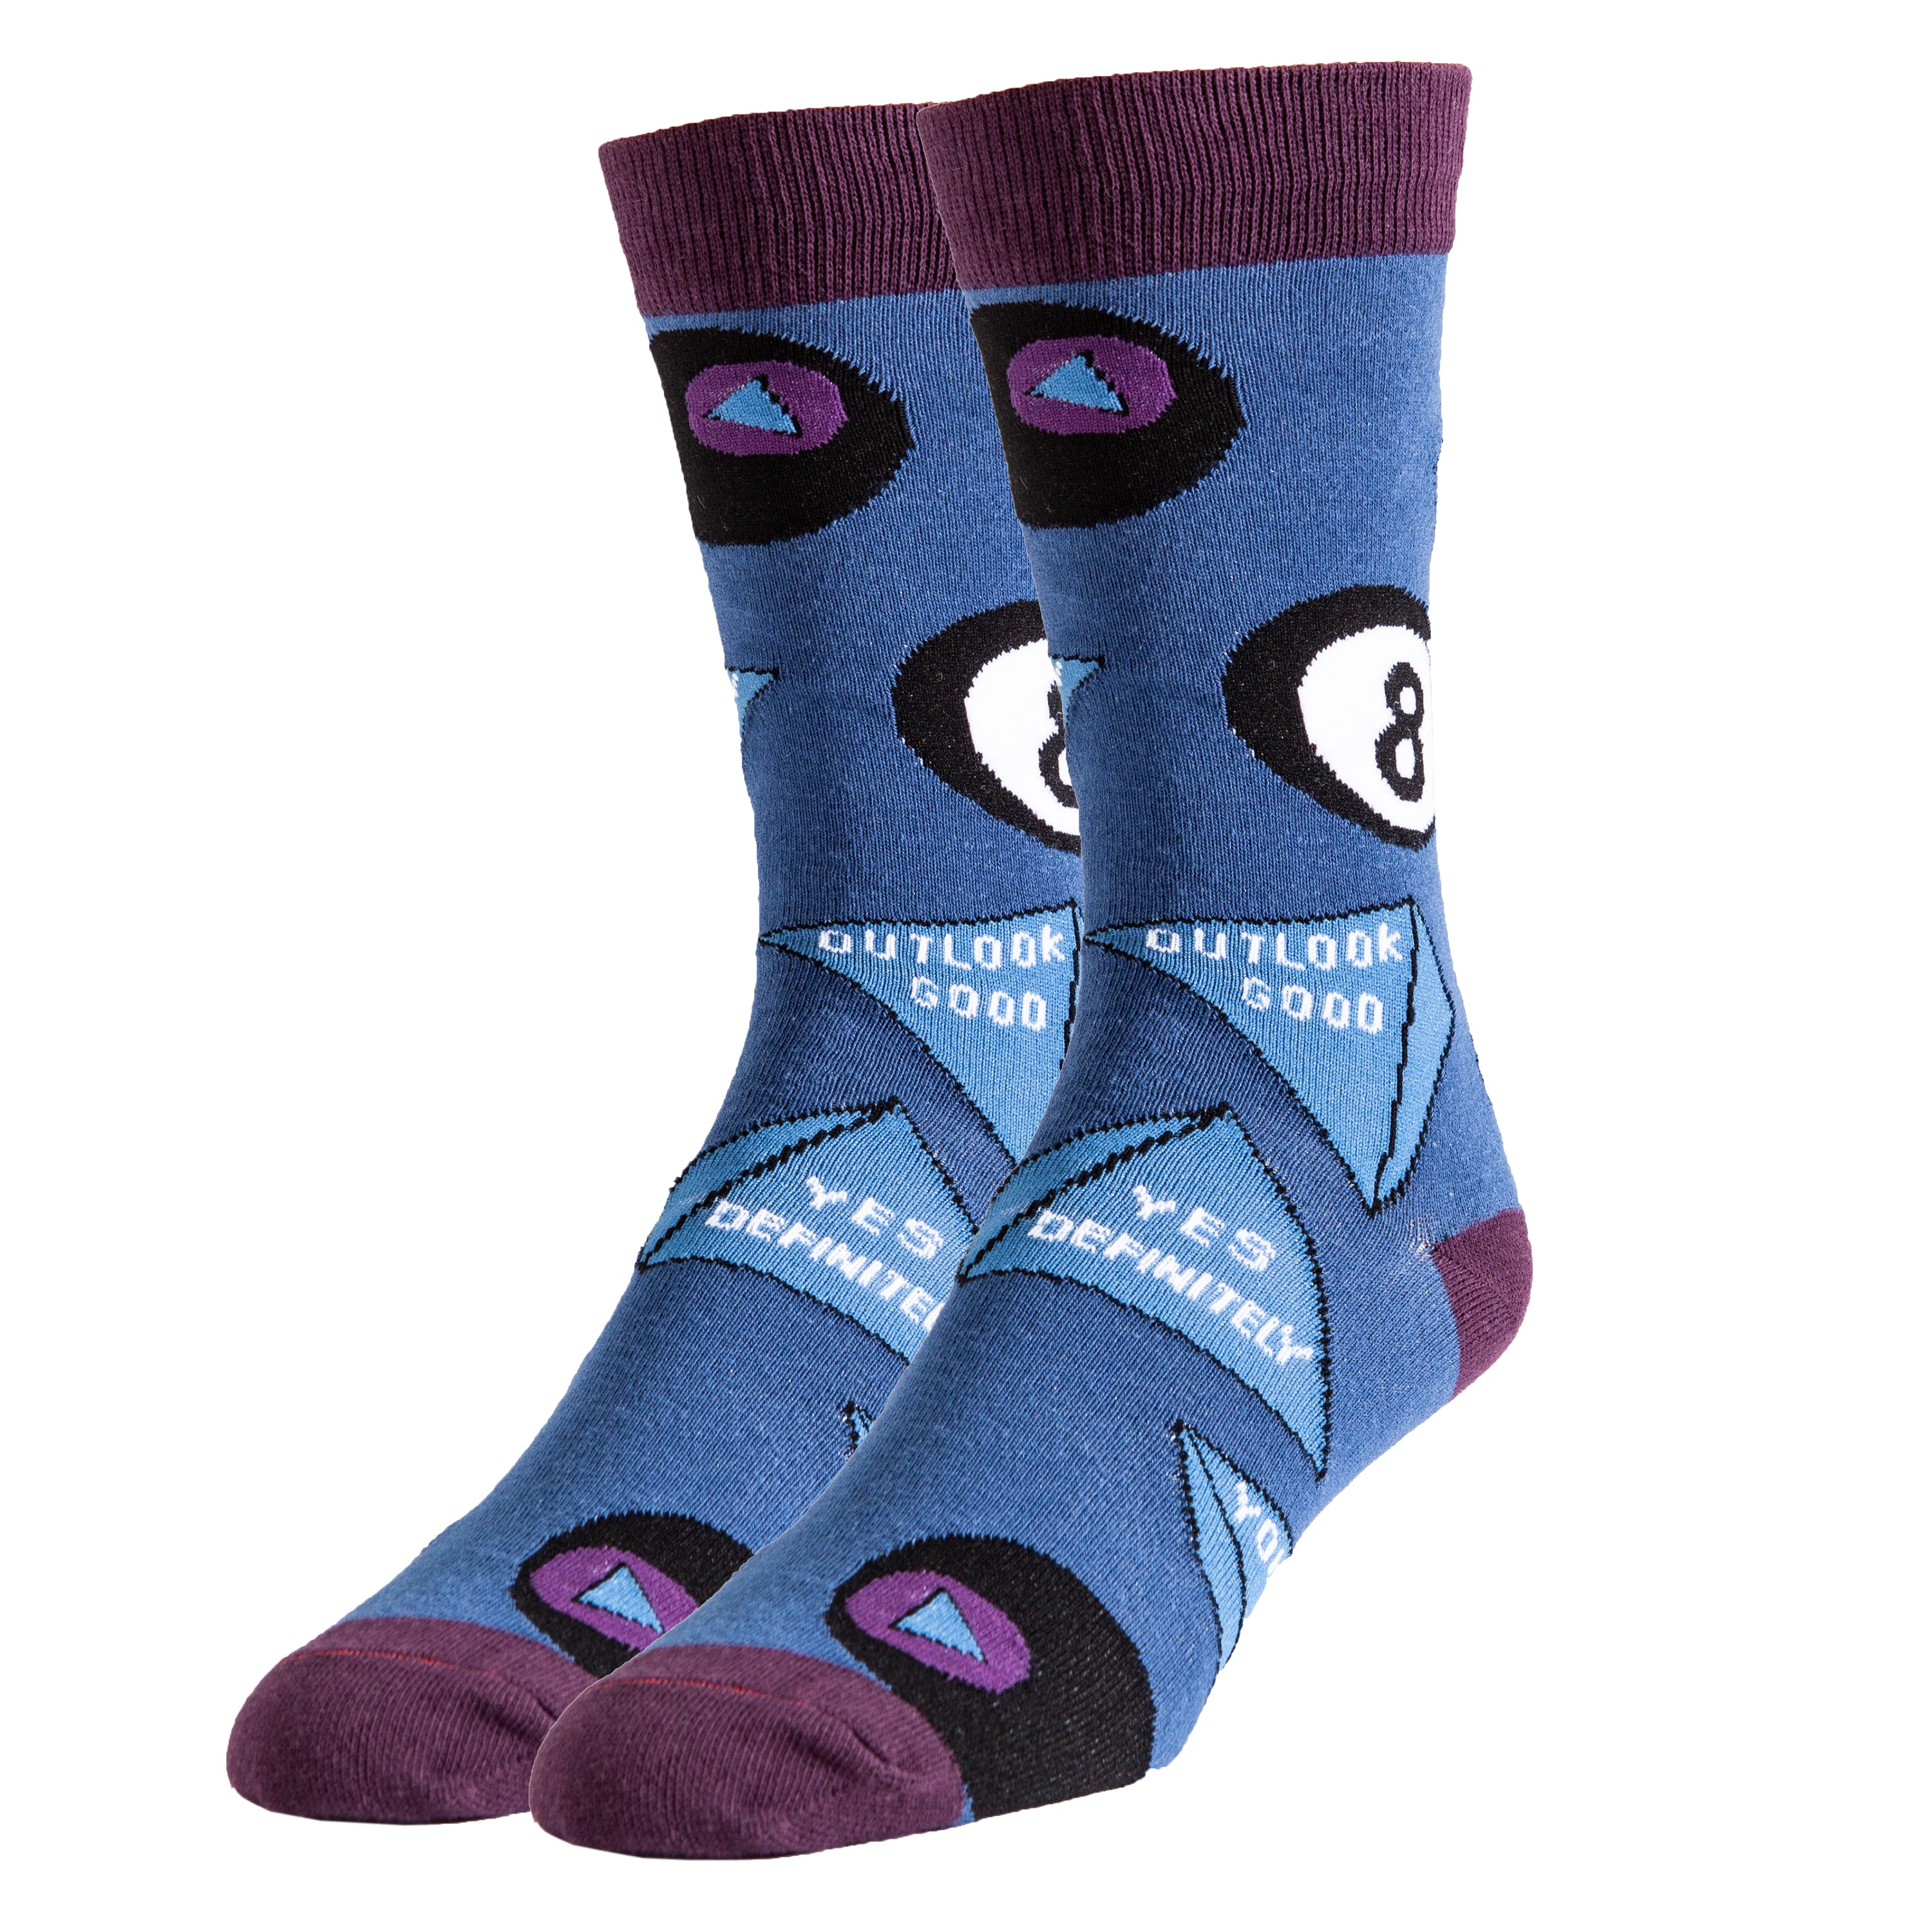 Ask Me Socks | Novelty Crew Socks For Men